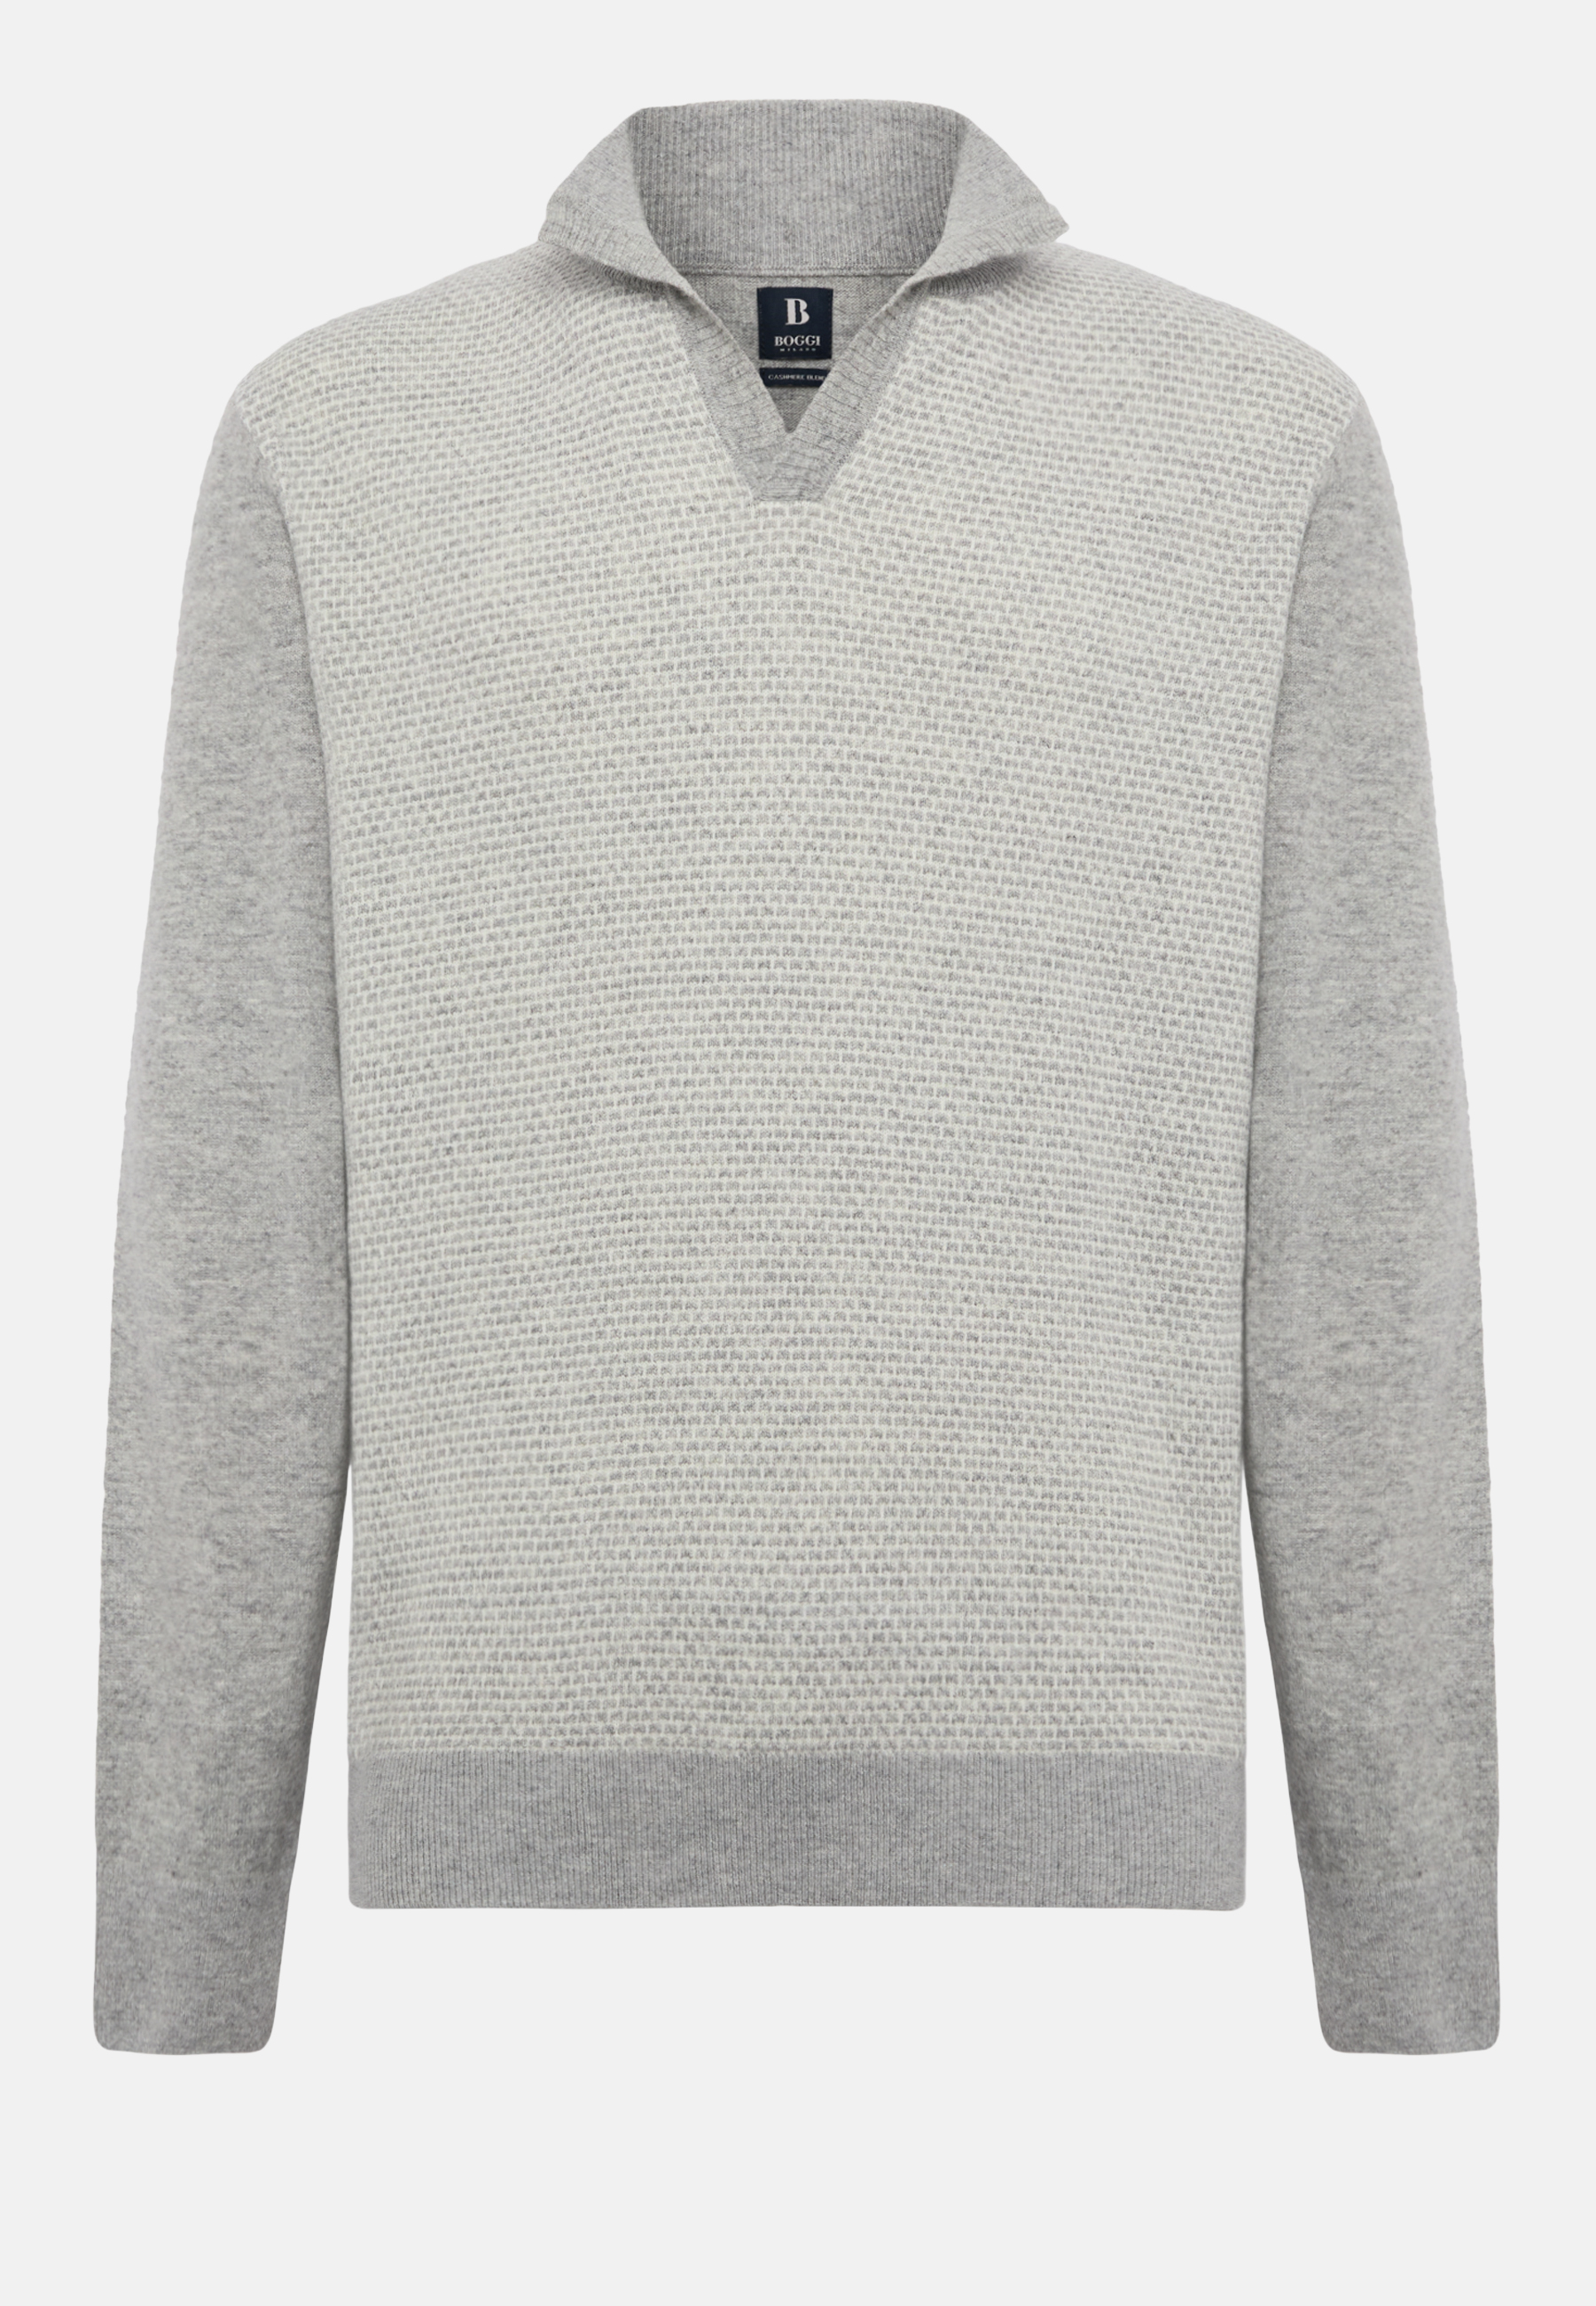 Essence Standard Mock Neck Sweatshirt in light gray